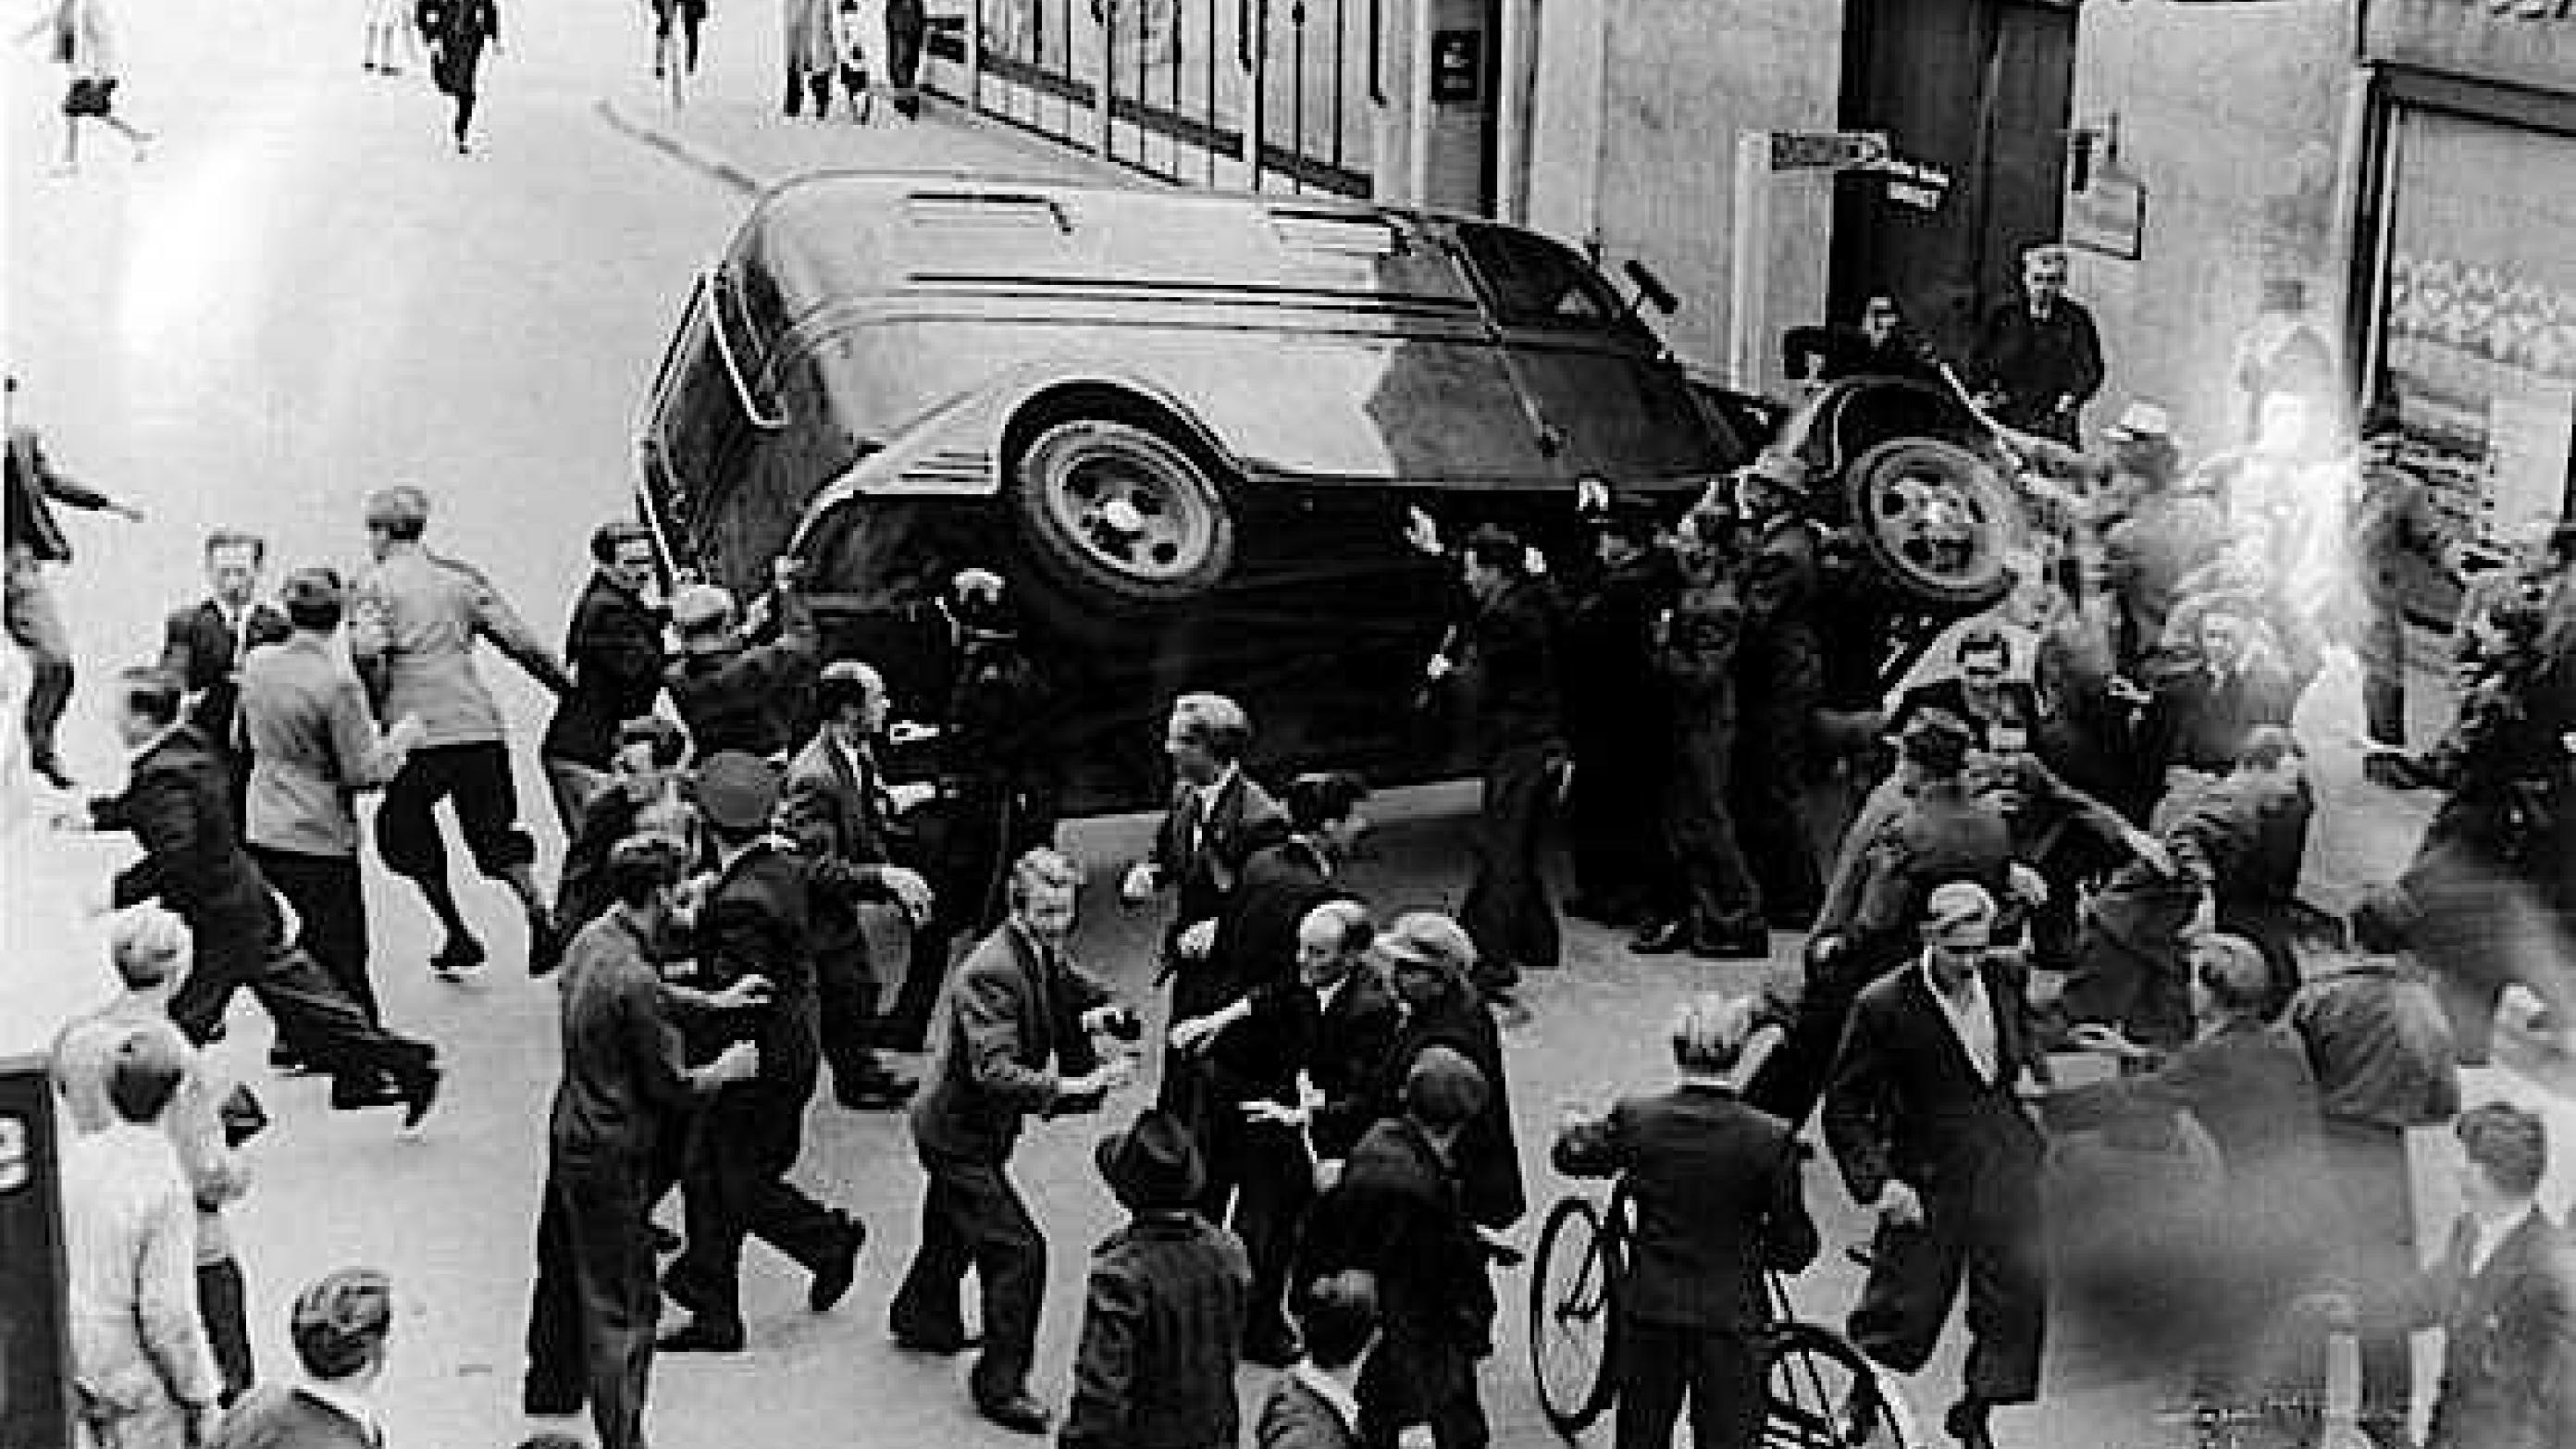 Modstandsbevægelsen stod stærkt i Odense. Det var ikke tilfældigt, at dødspatruljerne slog hårdt til her. Væltet politibil i Odense under folkestrejken 1943.